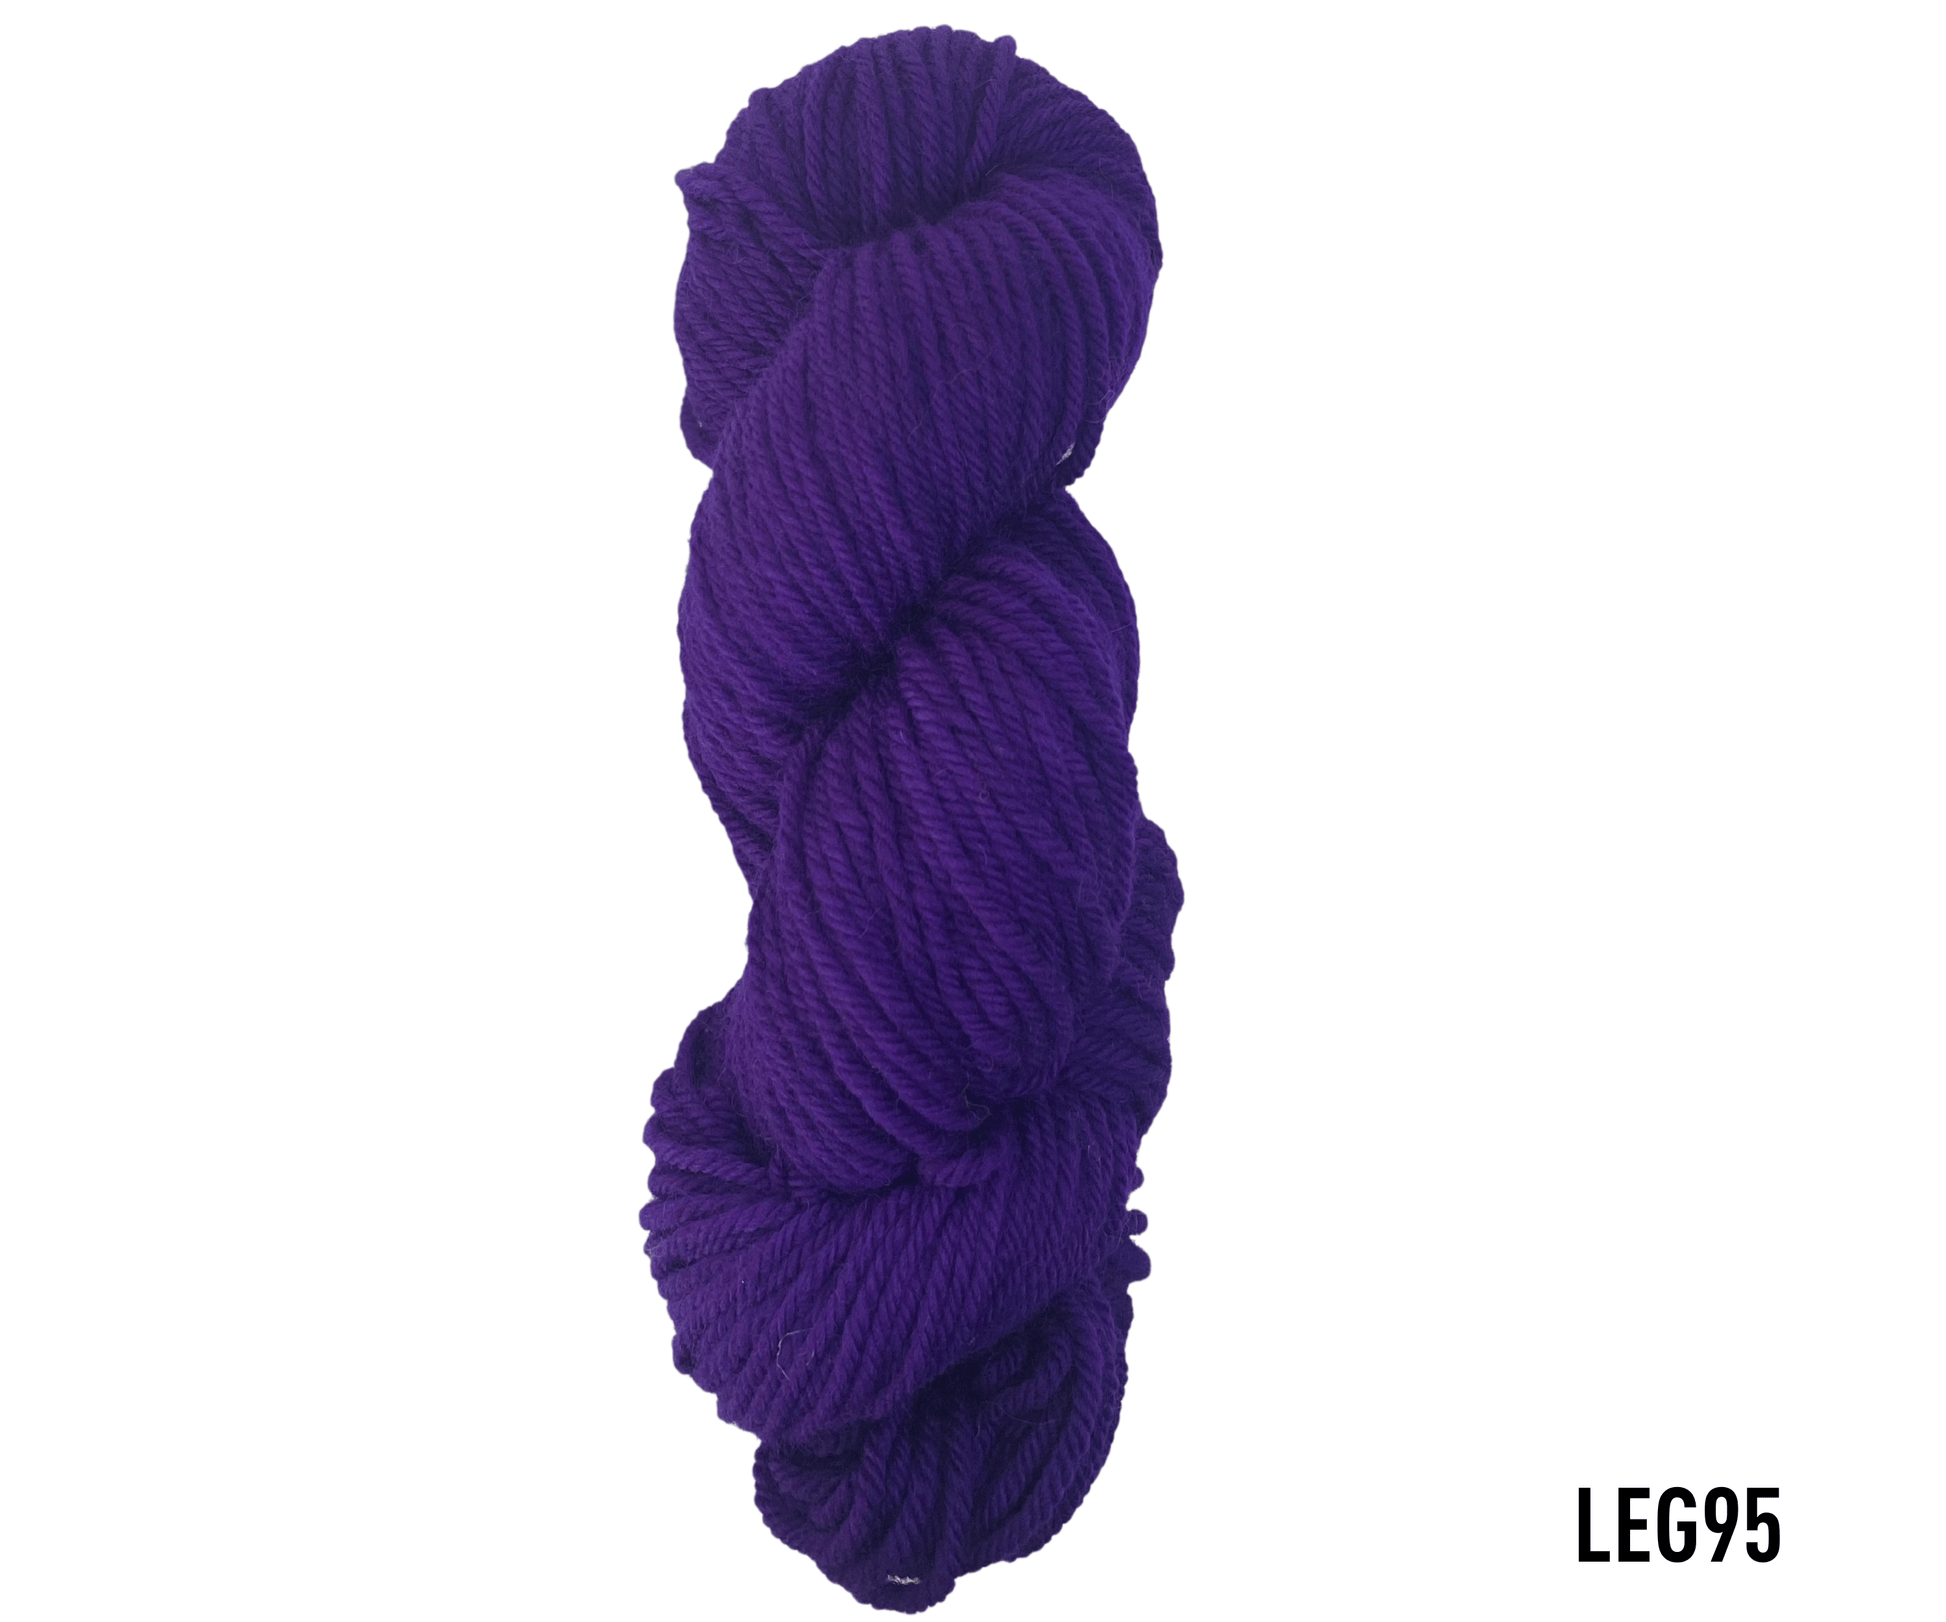 lanabel LANA NATURAL GRUESA LEG95 lana natural gruesa Azulados (lana natural gruesa)